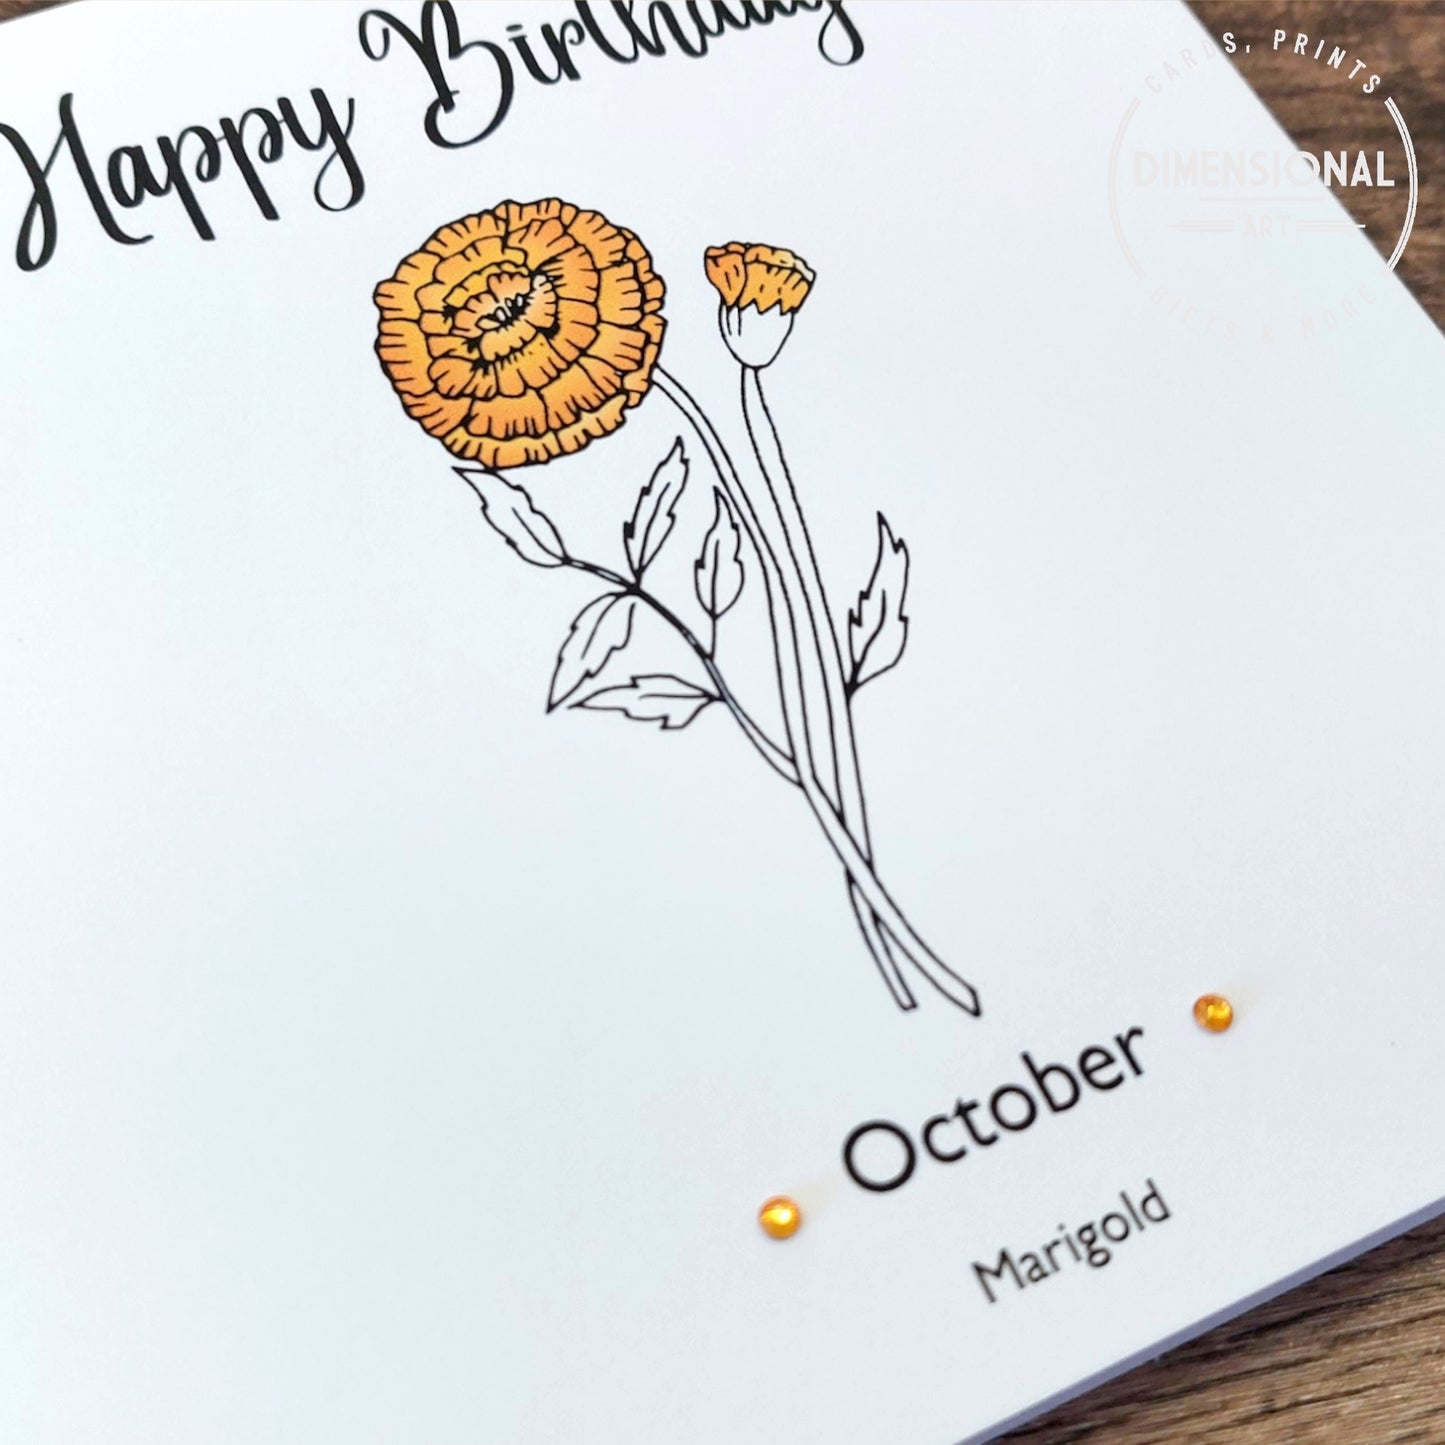 October - Marigold - Birthday Flower Card